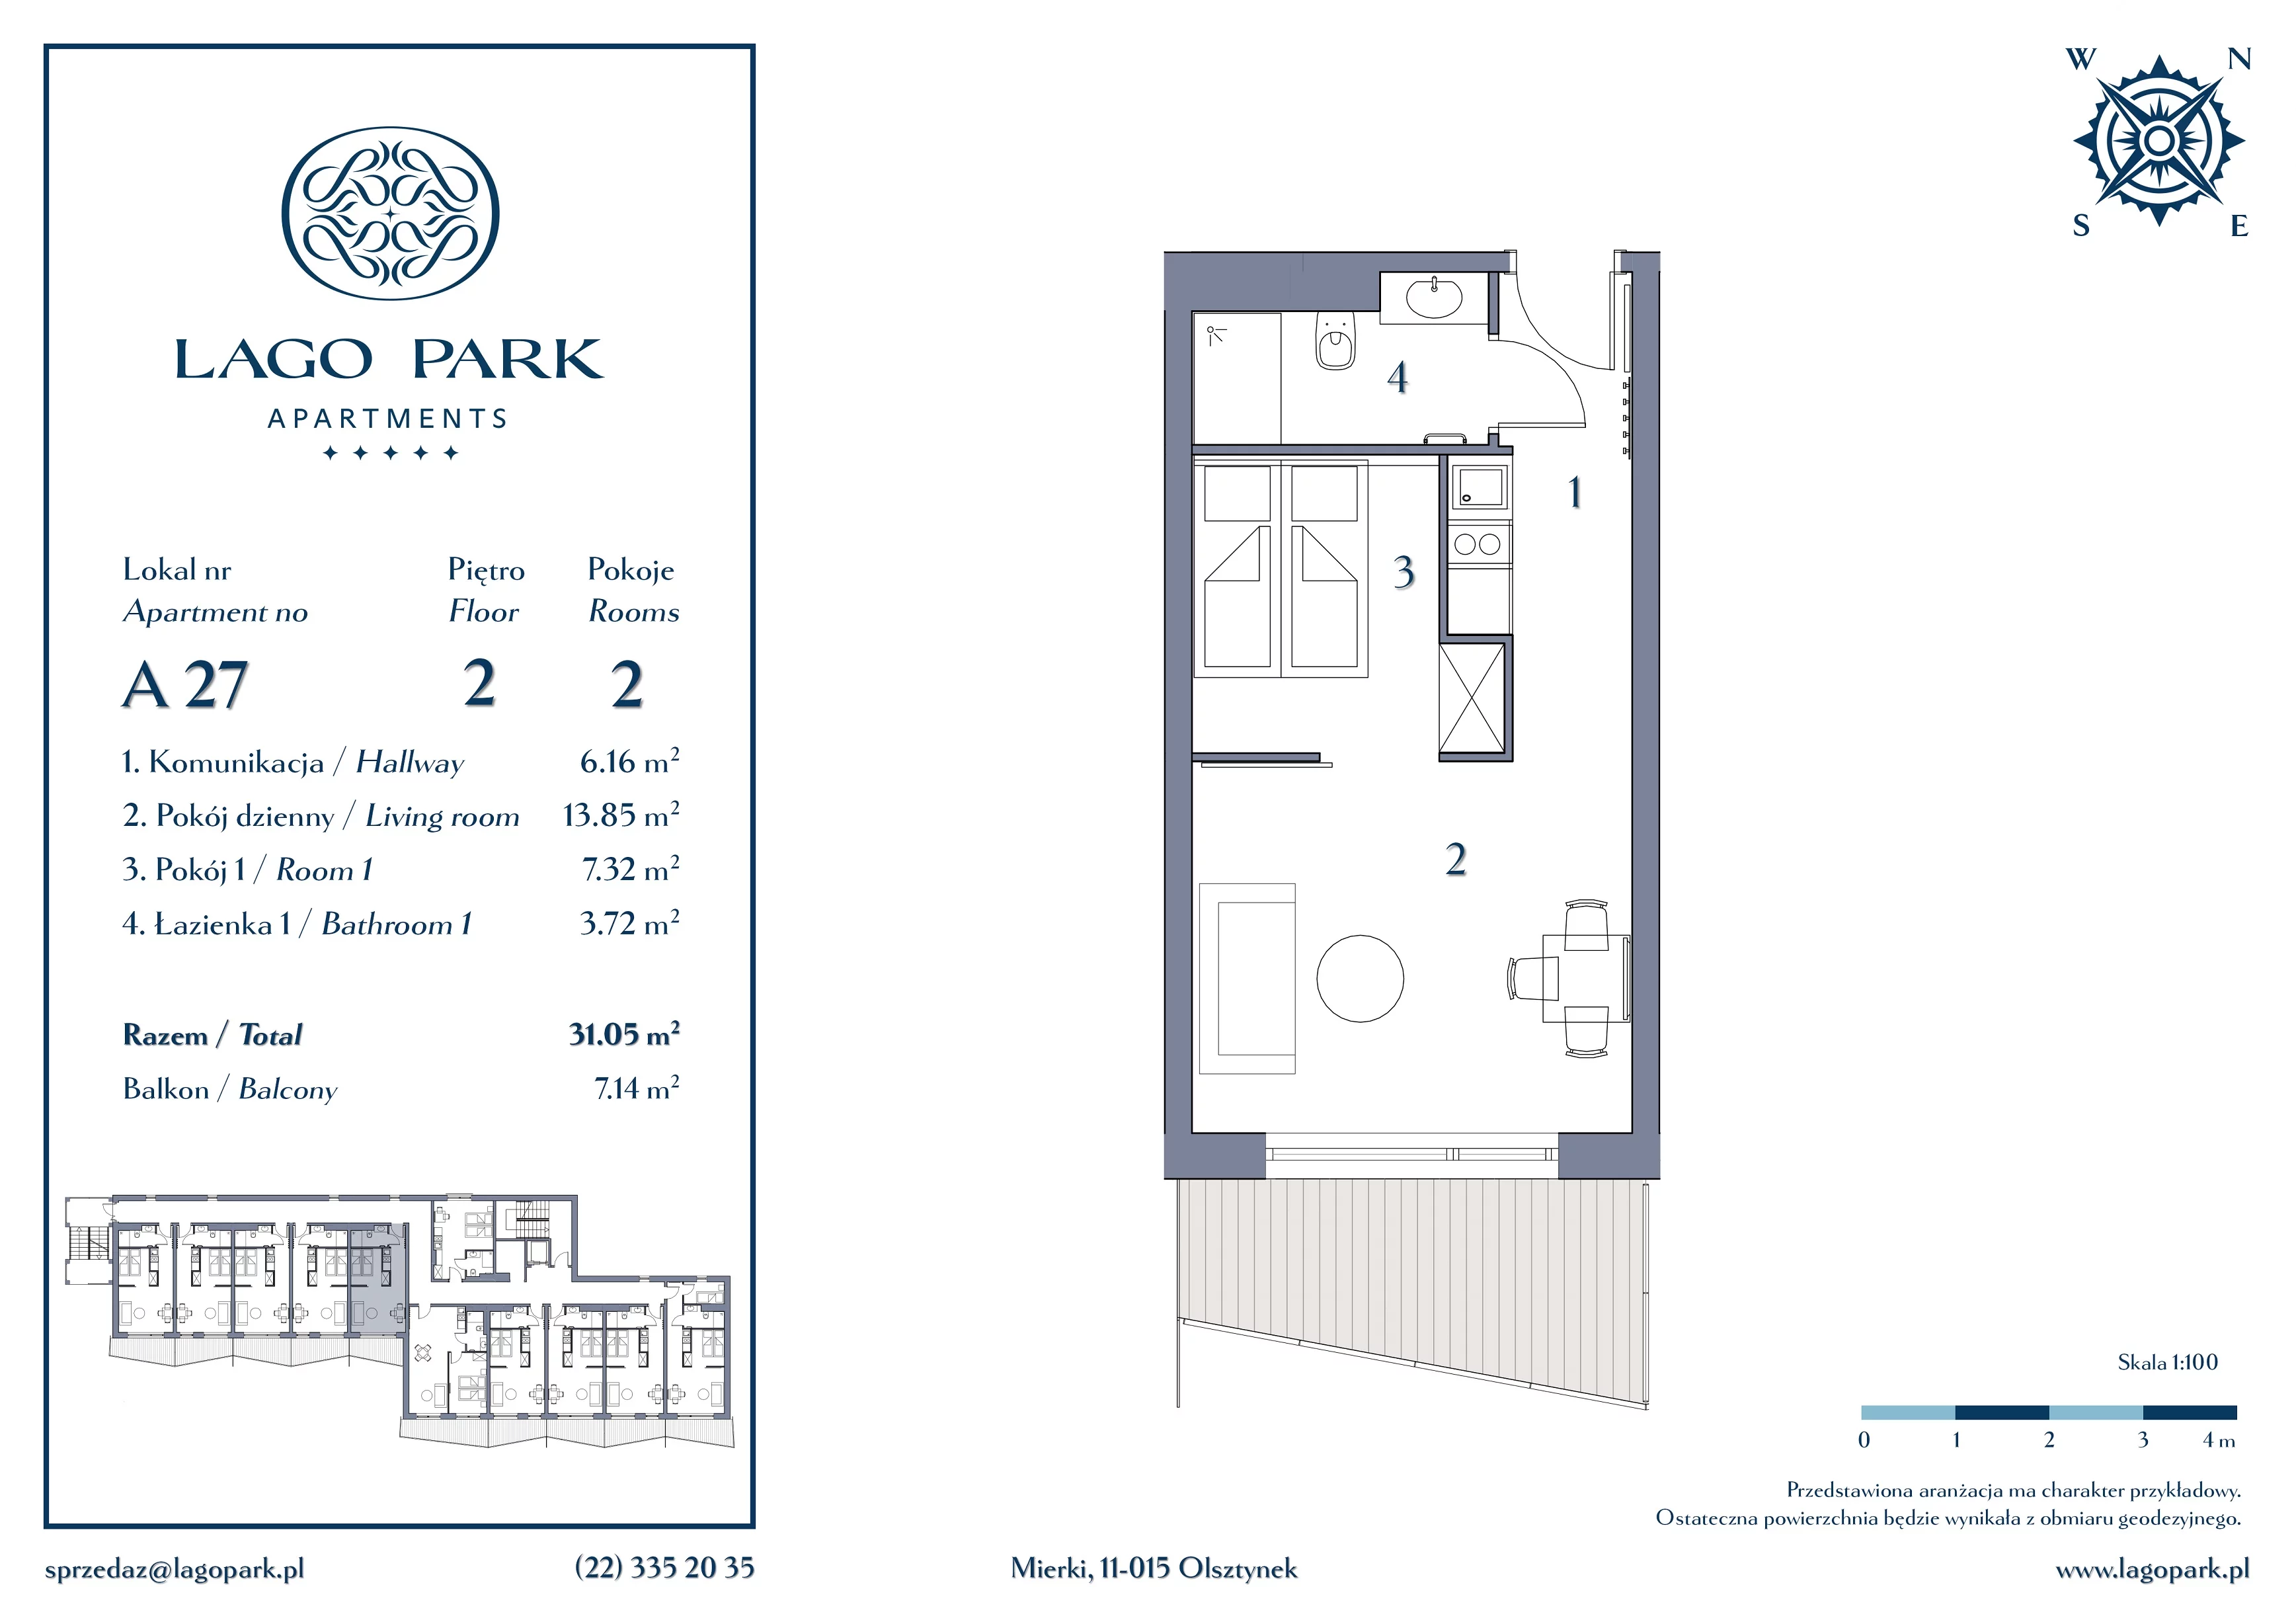 Apartament inwestycyjny 31,05 m², piętro 2, oferta nr A27, Lago Park Apartments by Aries, Mierki, Kołatek 2